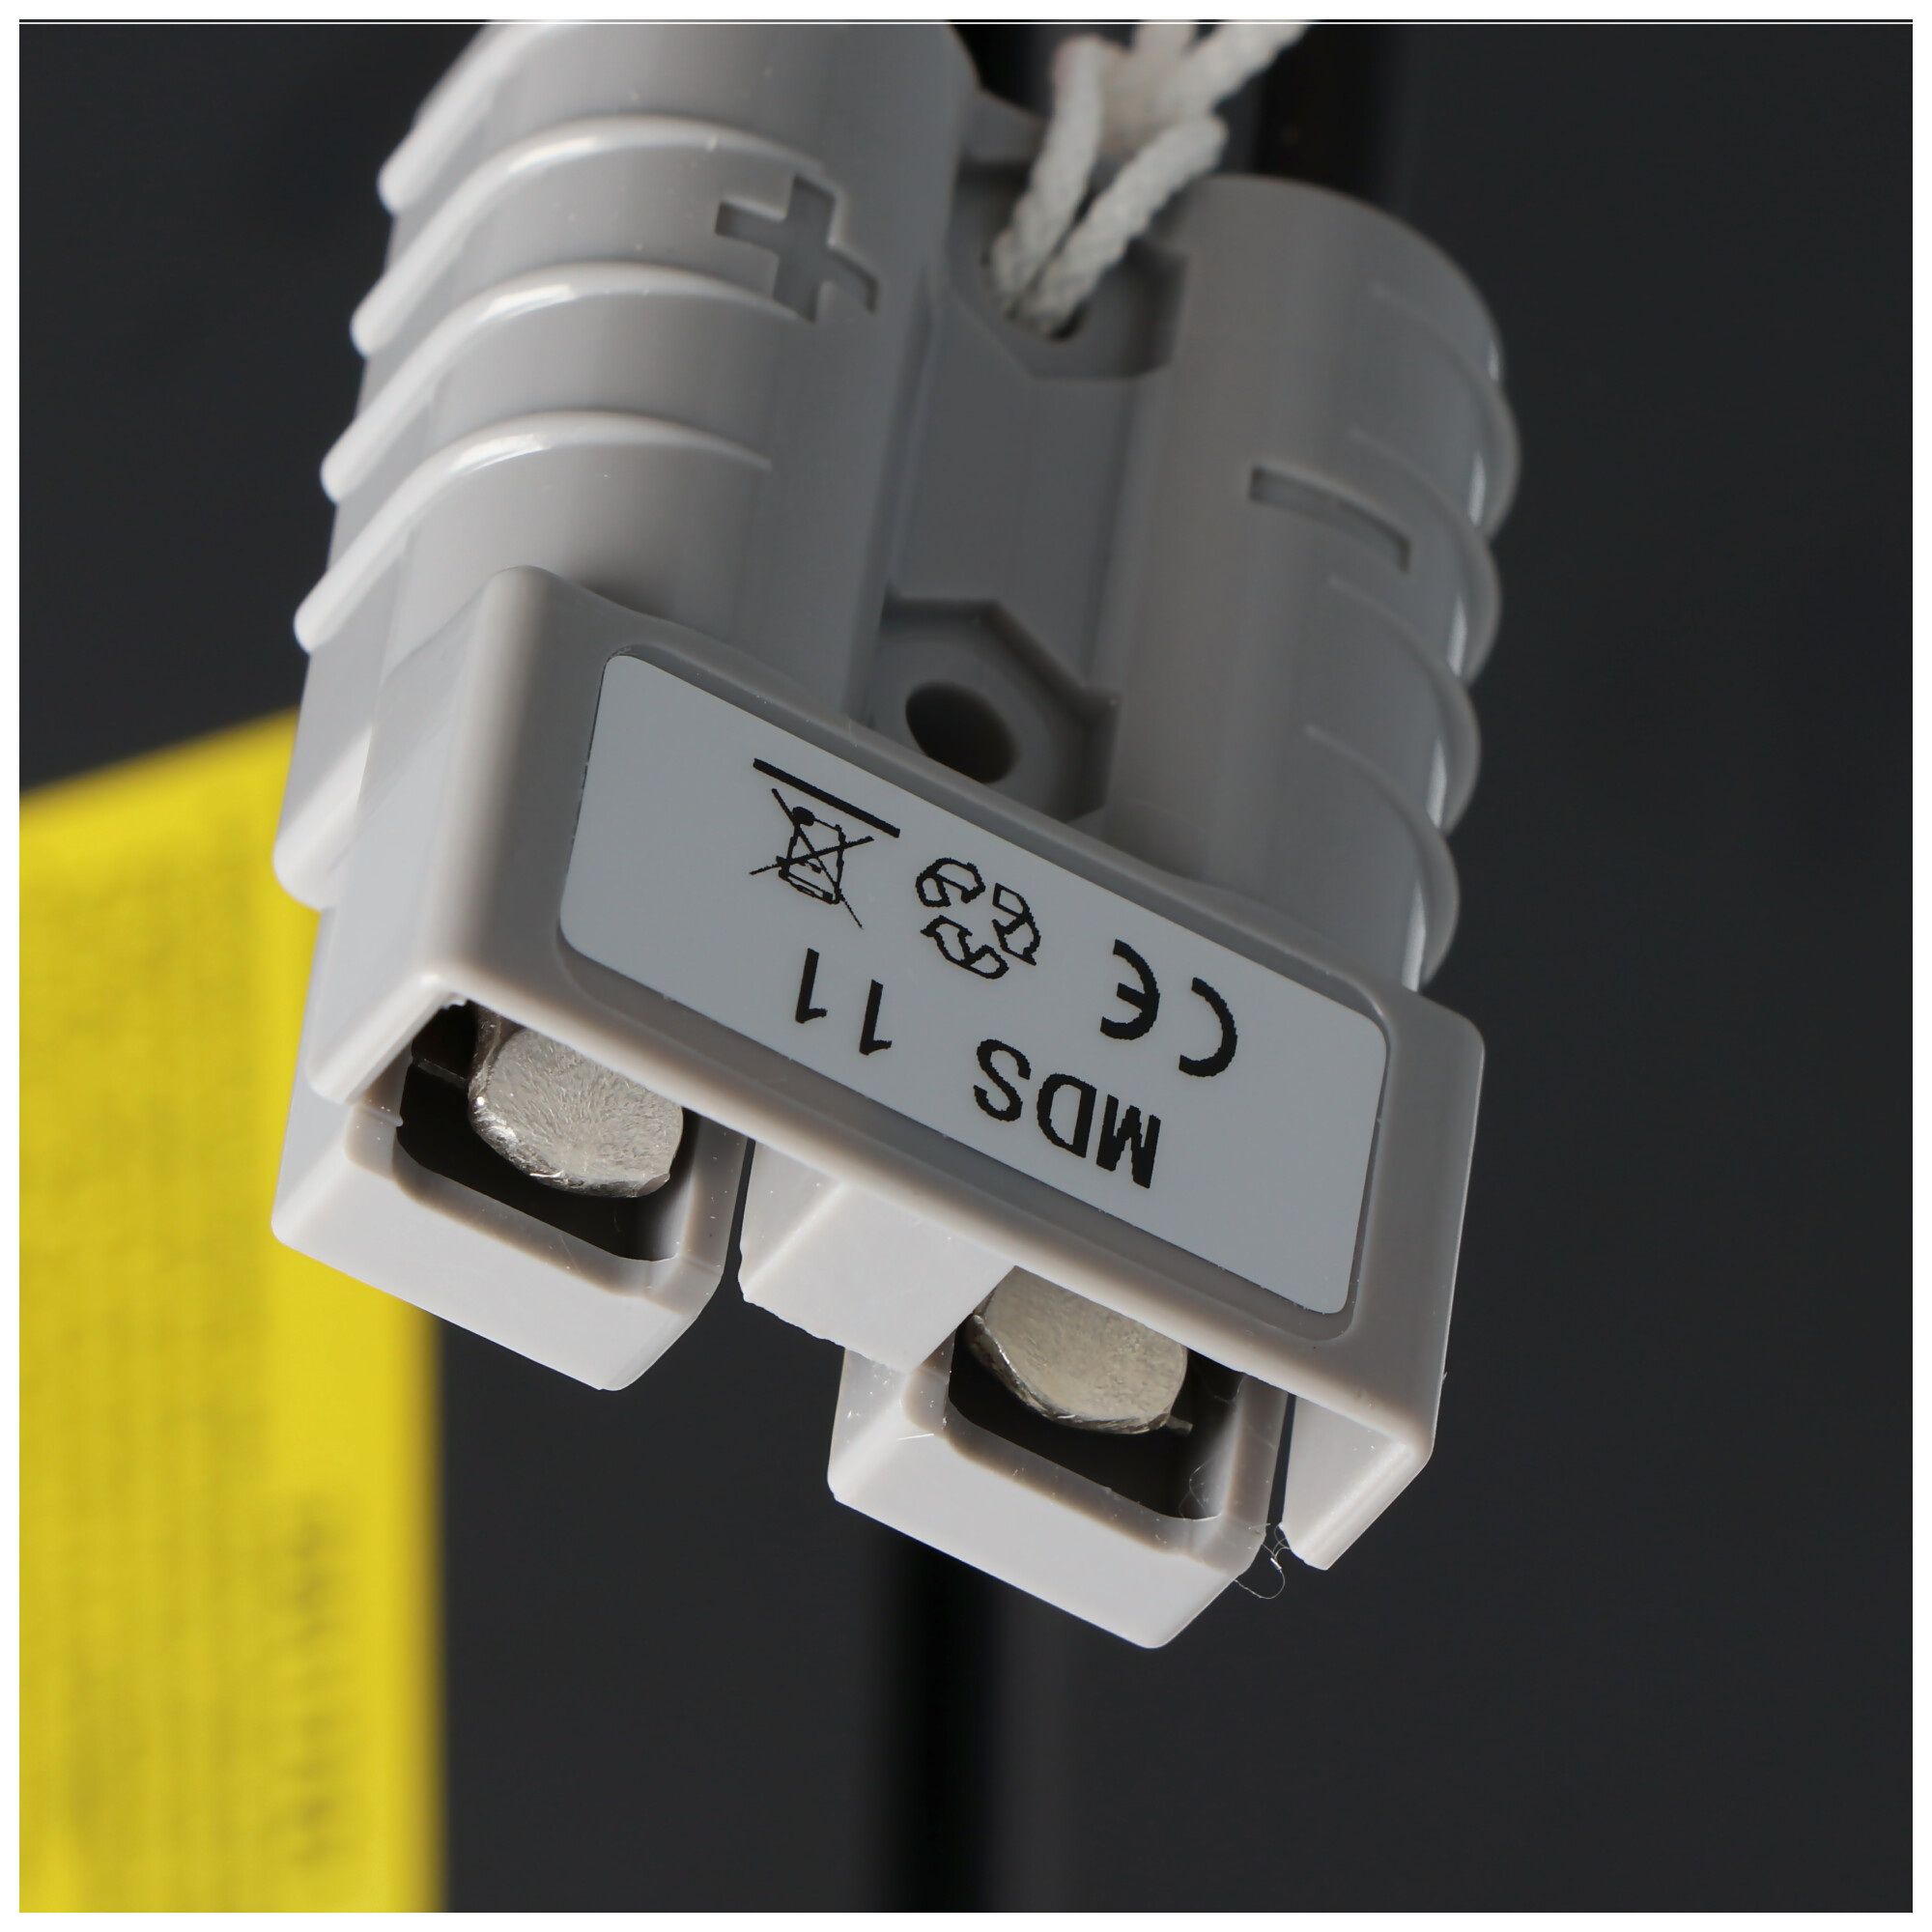 Nachbau Akku exakt passend für den APC-RBC11 Akku vormontiert mit Kabel und Stecker